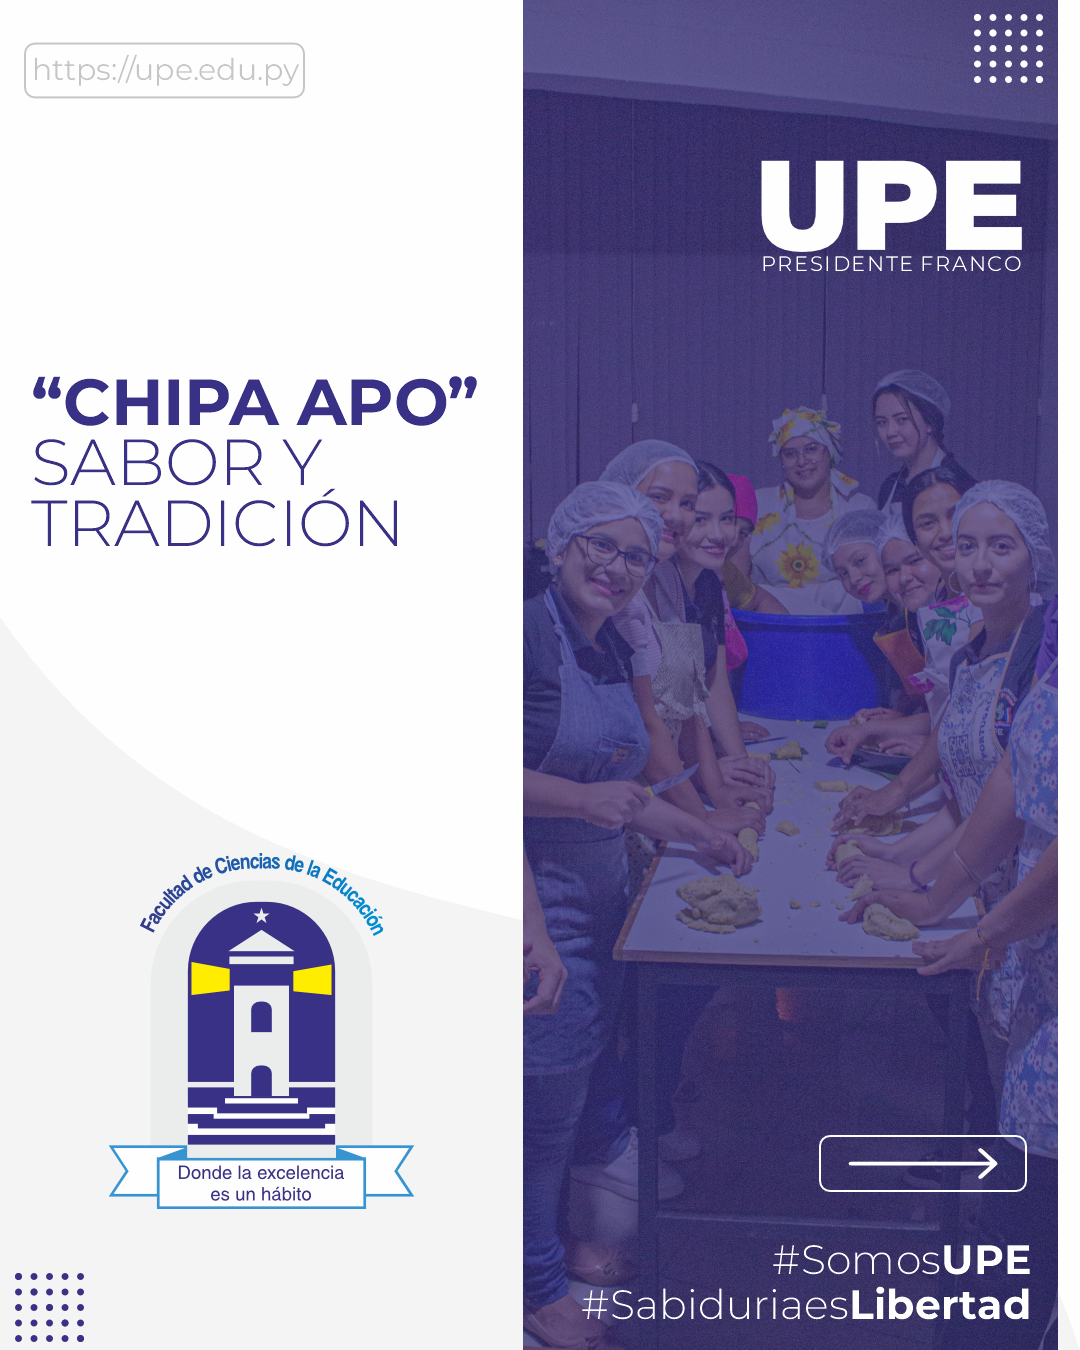 Tradicional Chipa Apo en la UPE: Compartiendo y Reanimando la Cultura